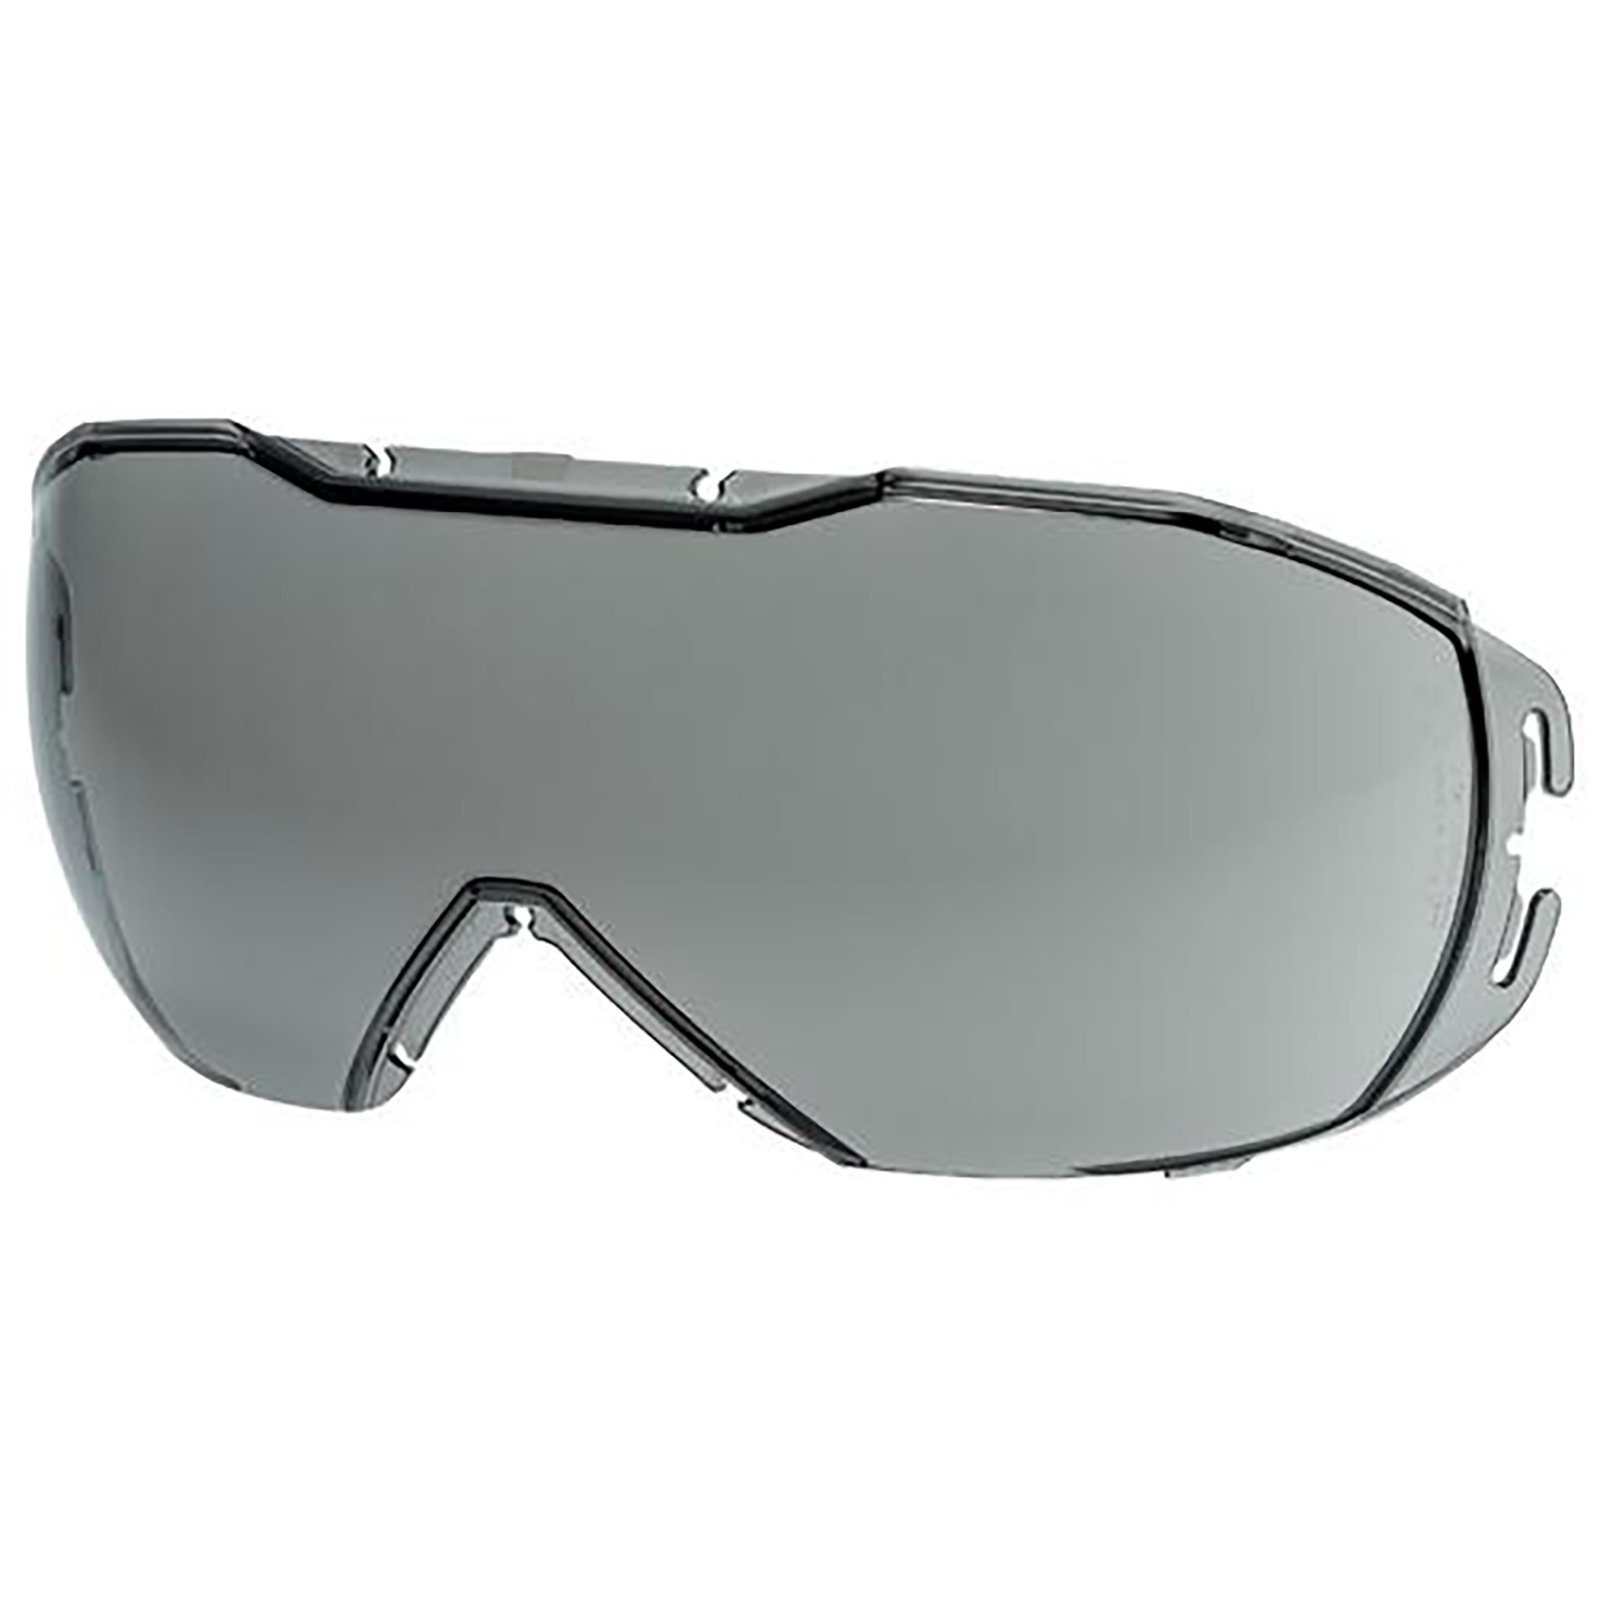 23% Uvex 9320257 grau Arbeitsschutzbrille exc. sv Ersatzscheibe